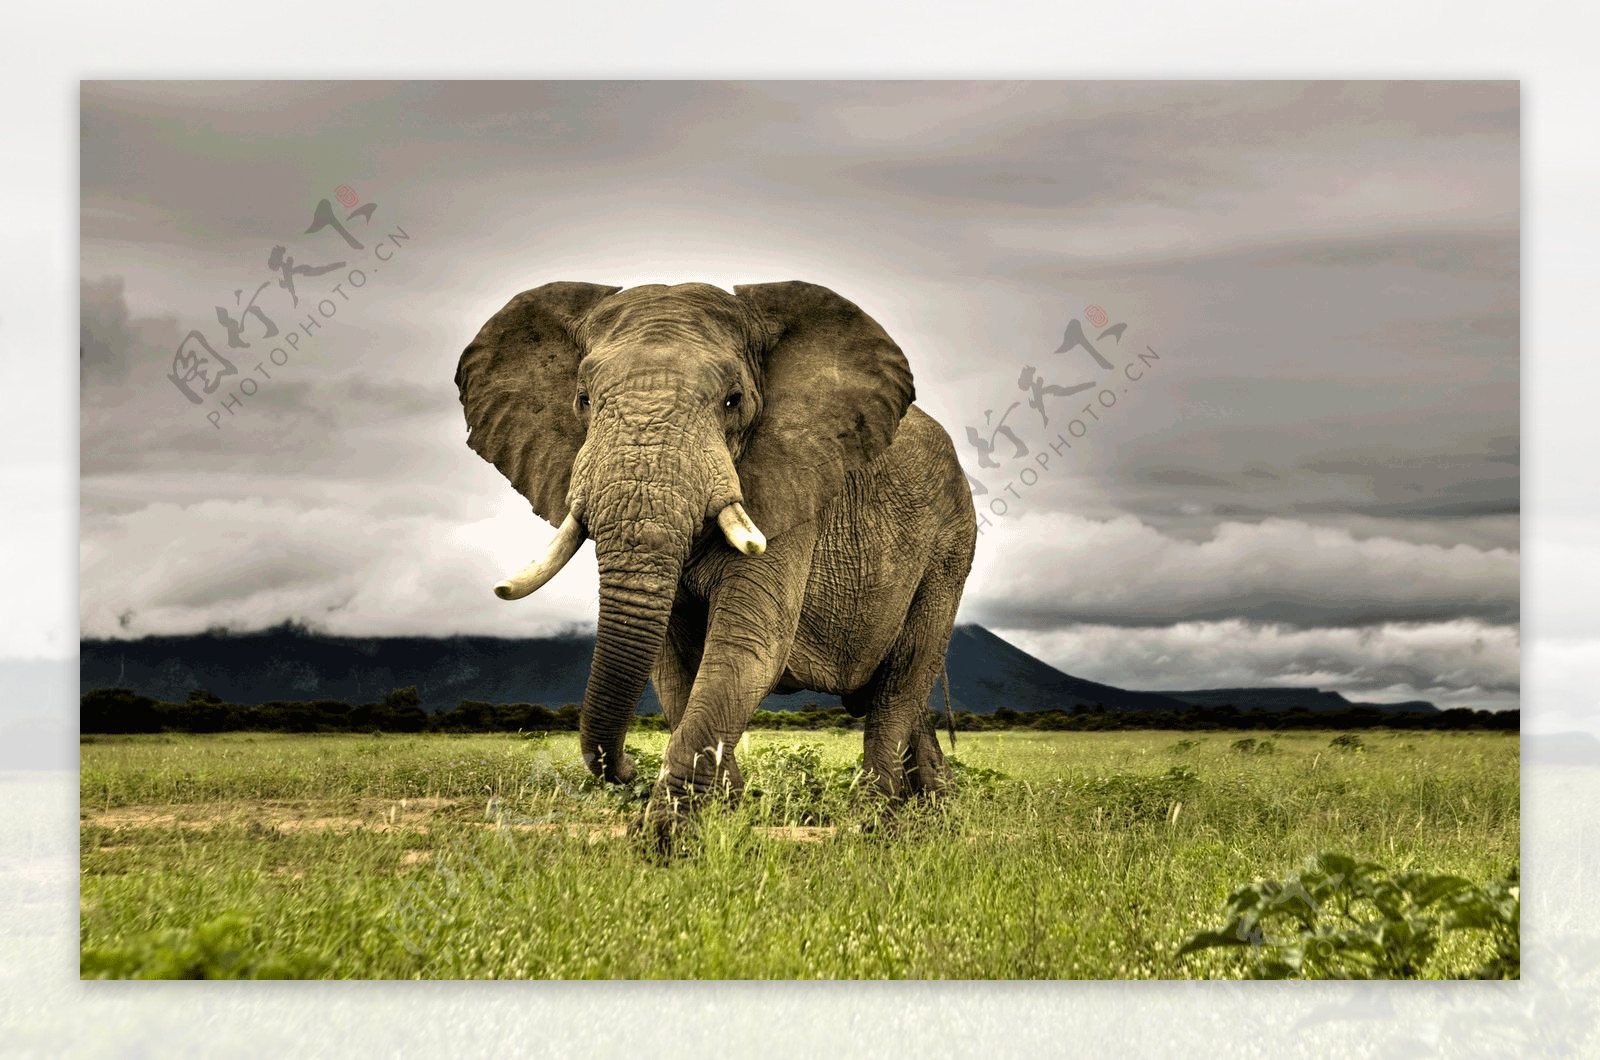 体型庞大的大象